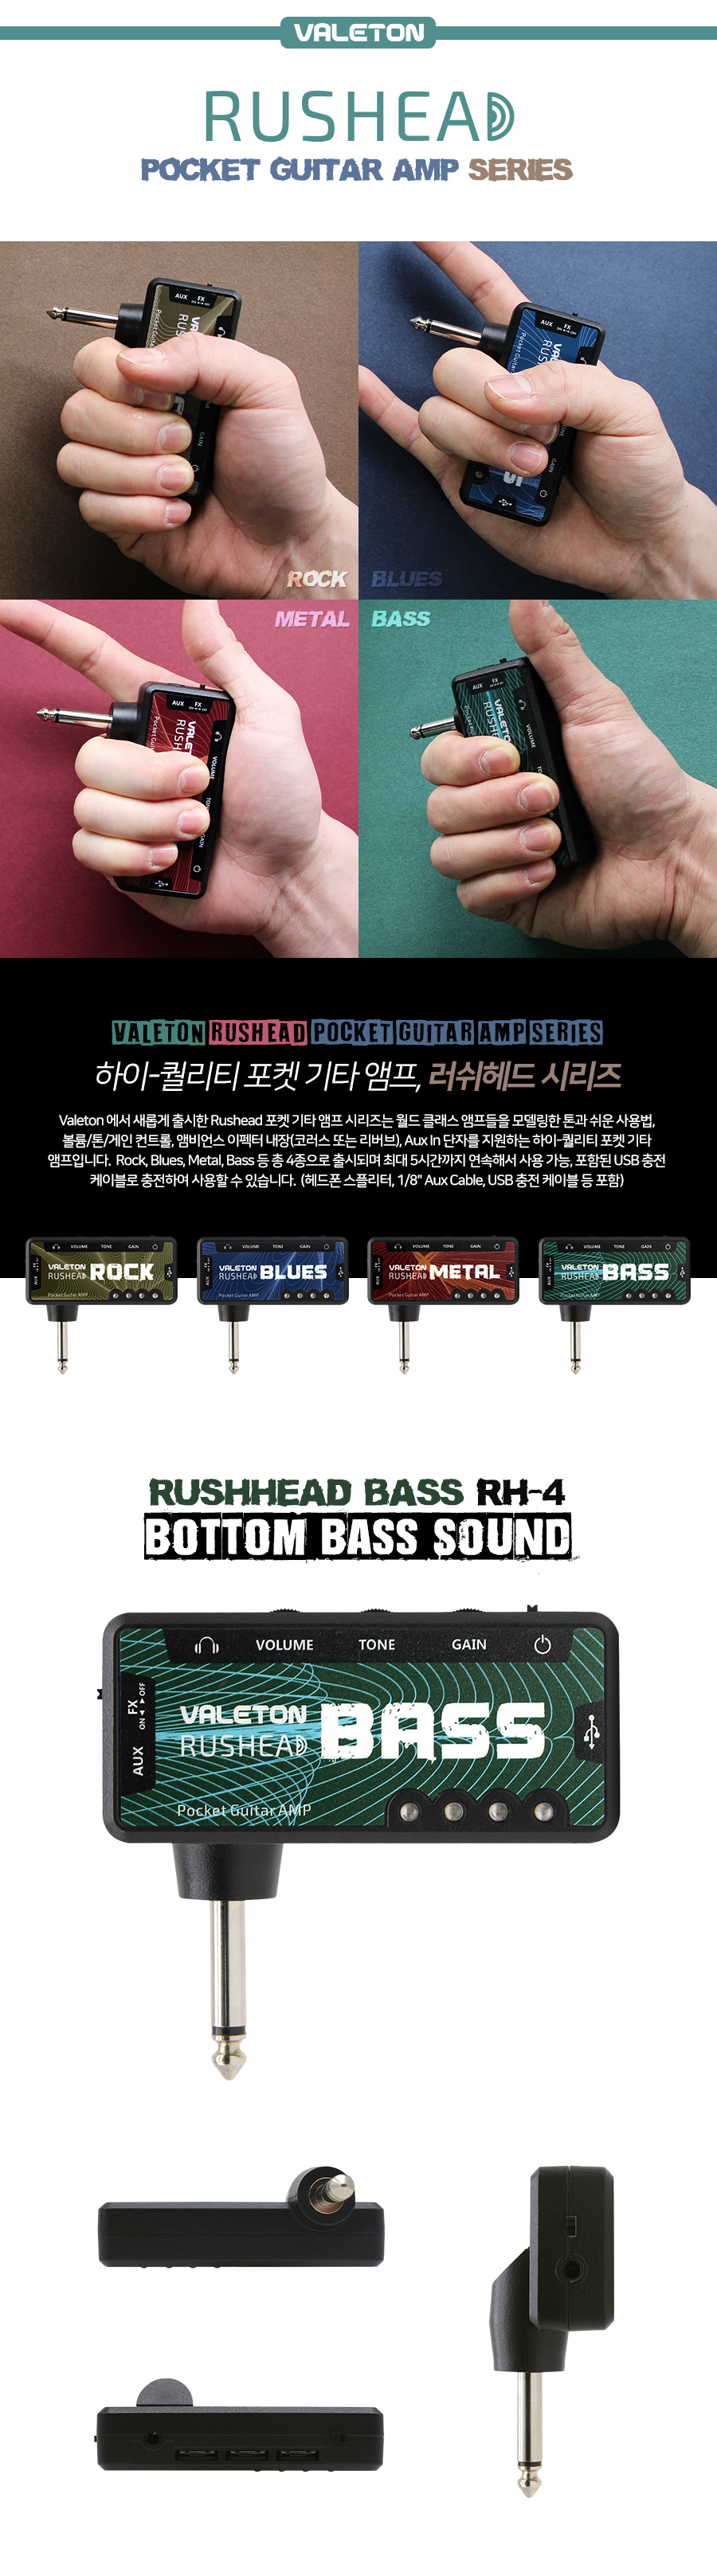 bass(3)_164640.jpg